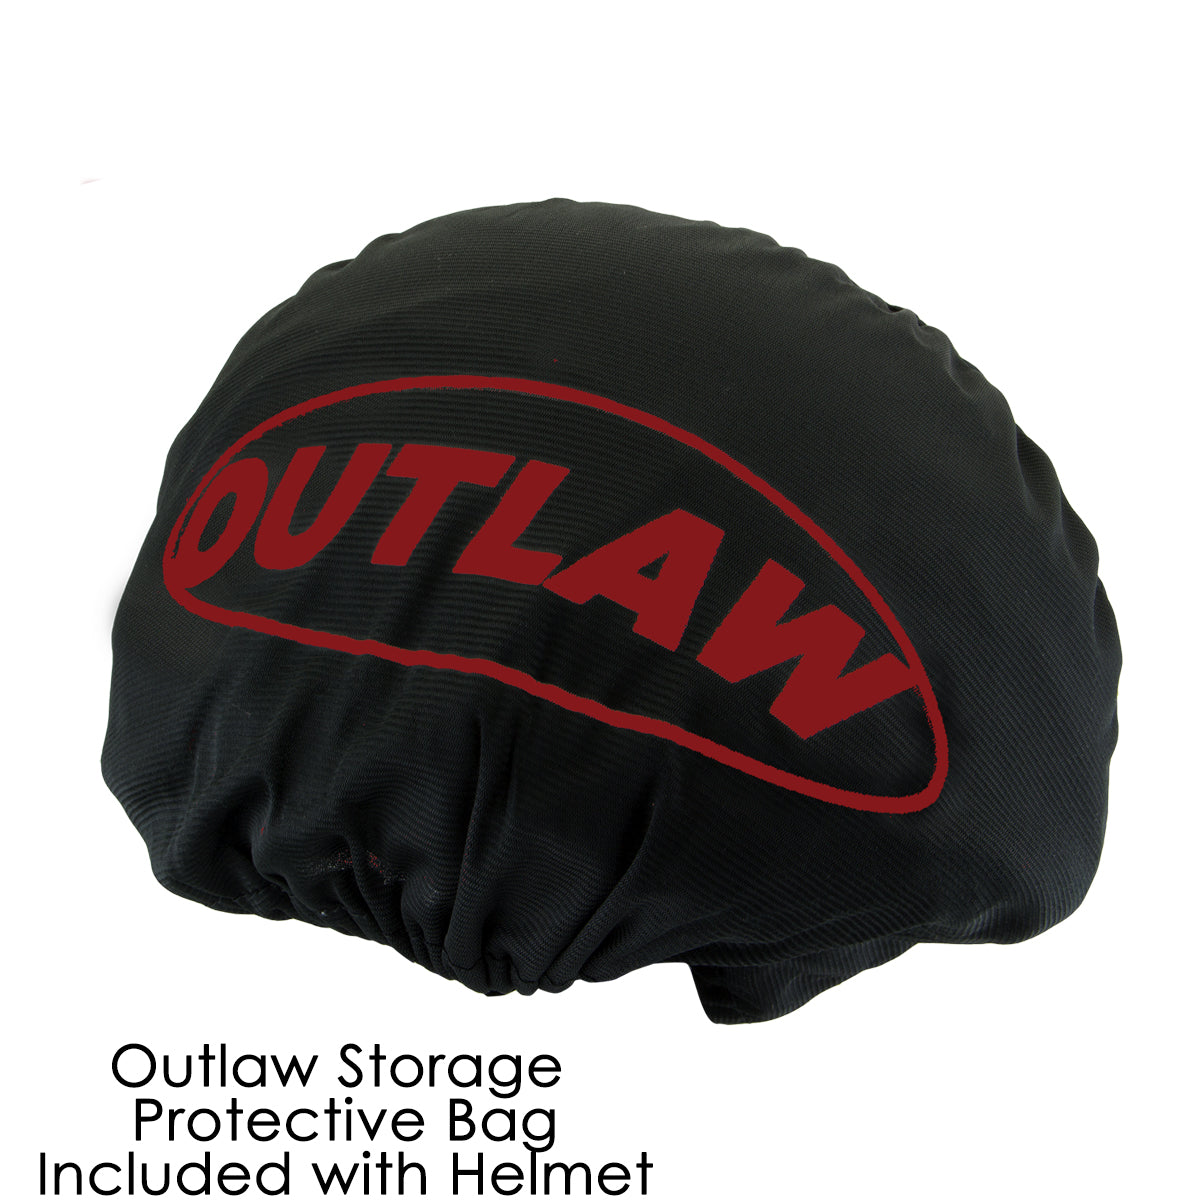 Outlaw T-72 'Black Widow' Flat Black Motorcycle Half Helmet with Drop Down Visor